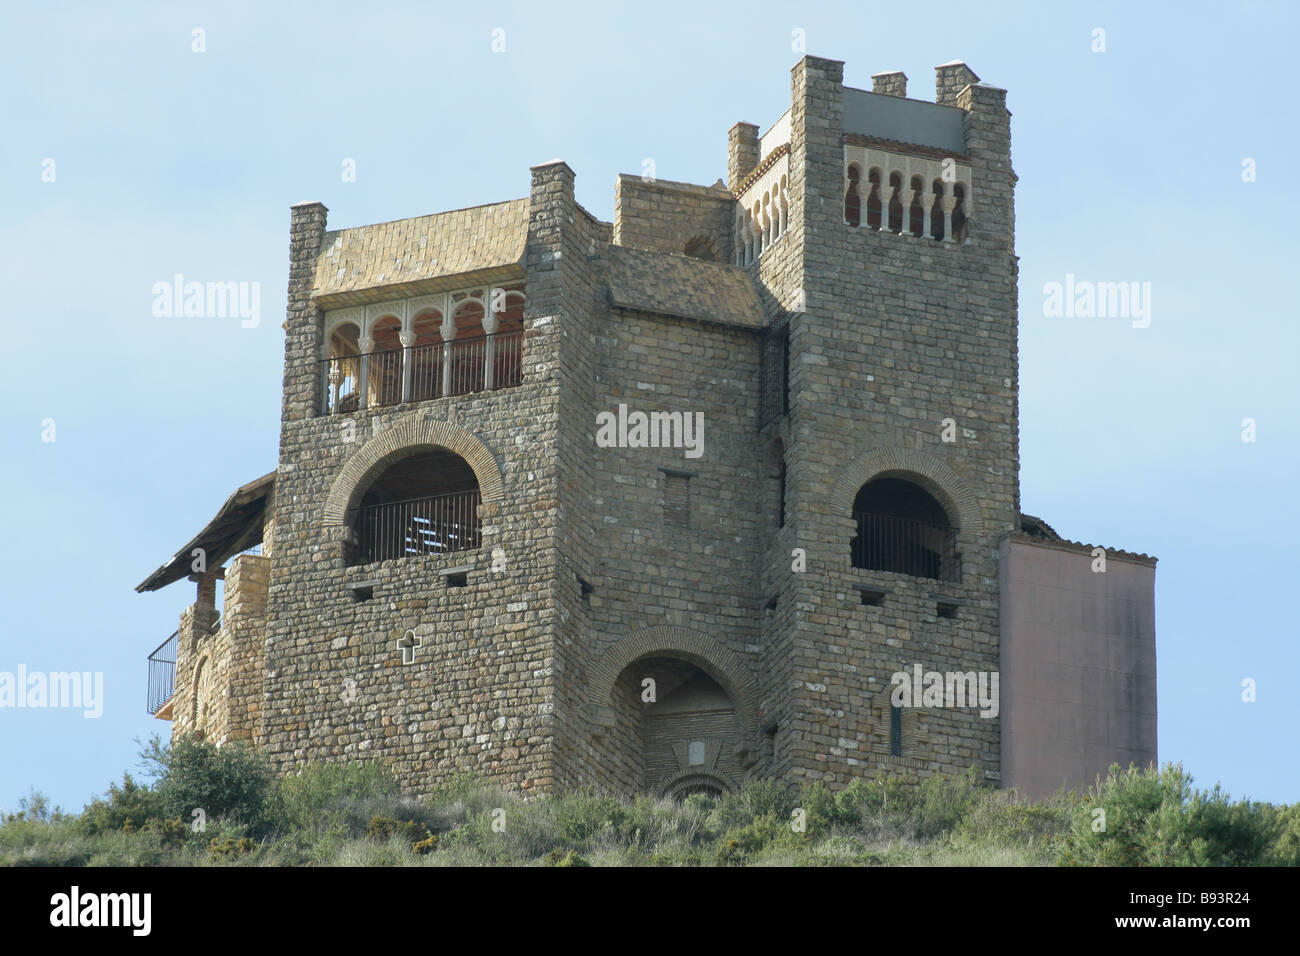 Castle near Alhaurin el Grande in Malaga province Spain Stock Photo